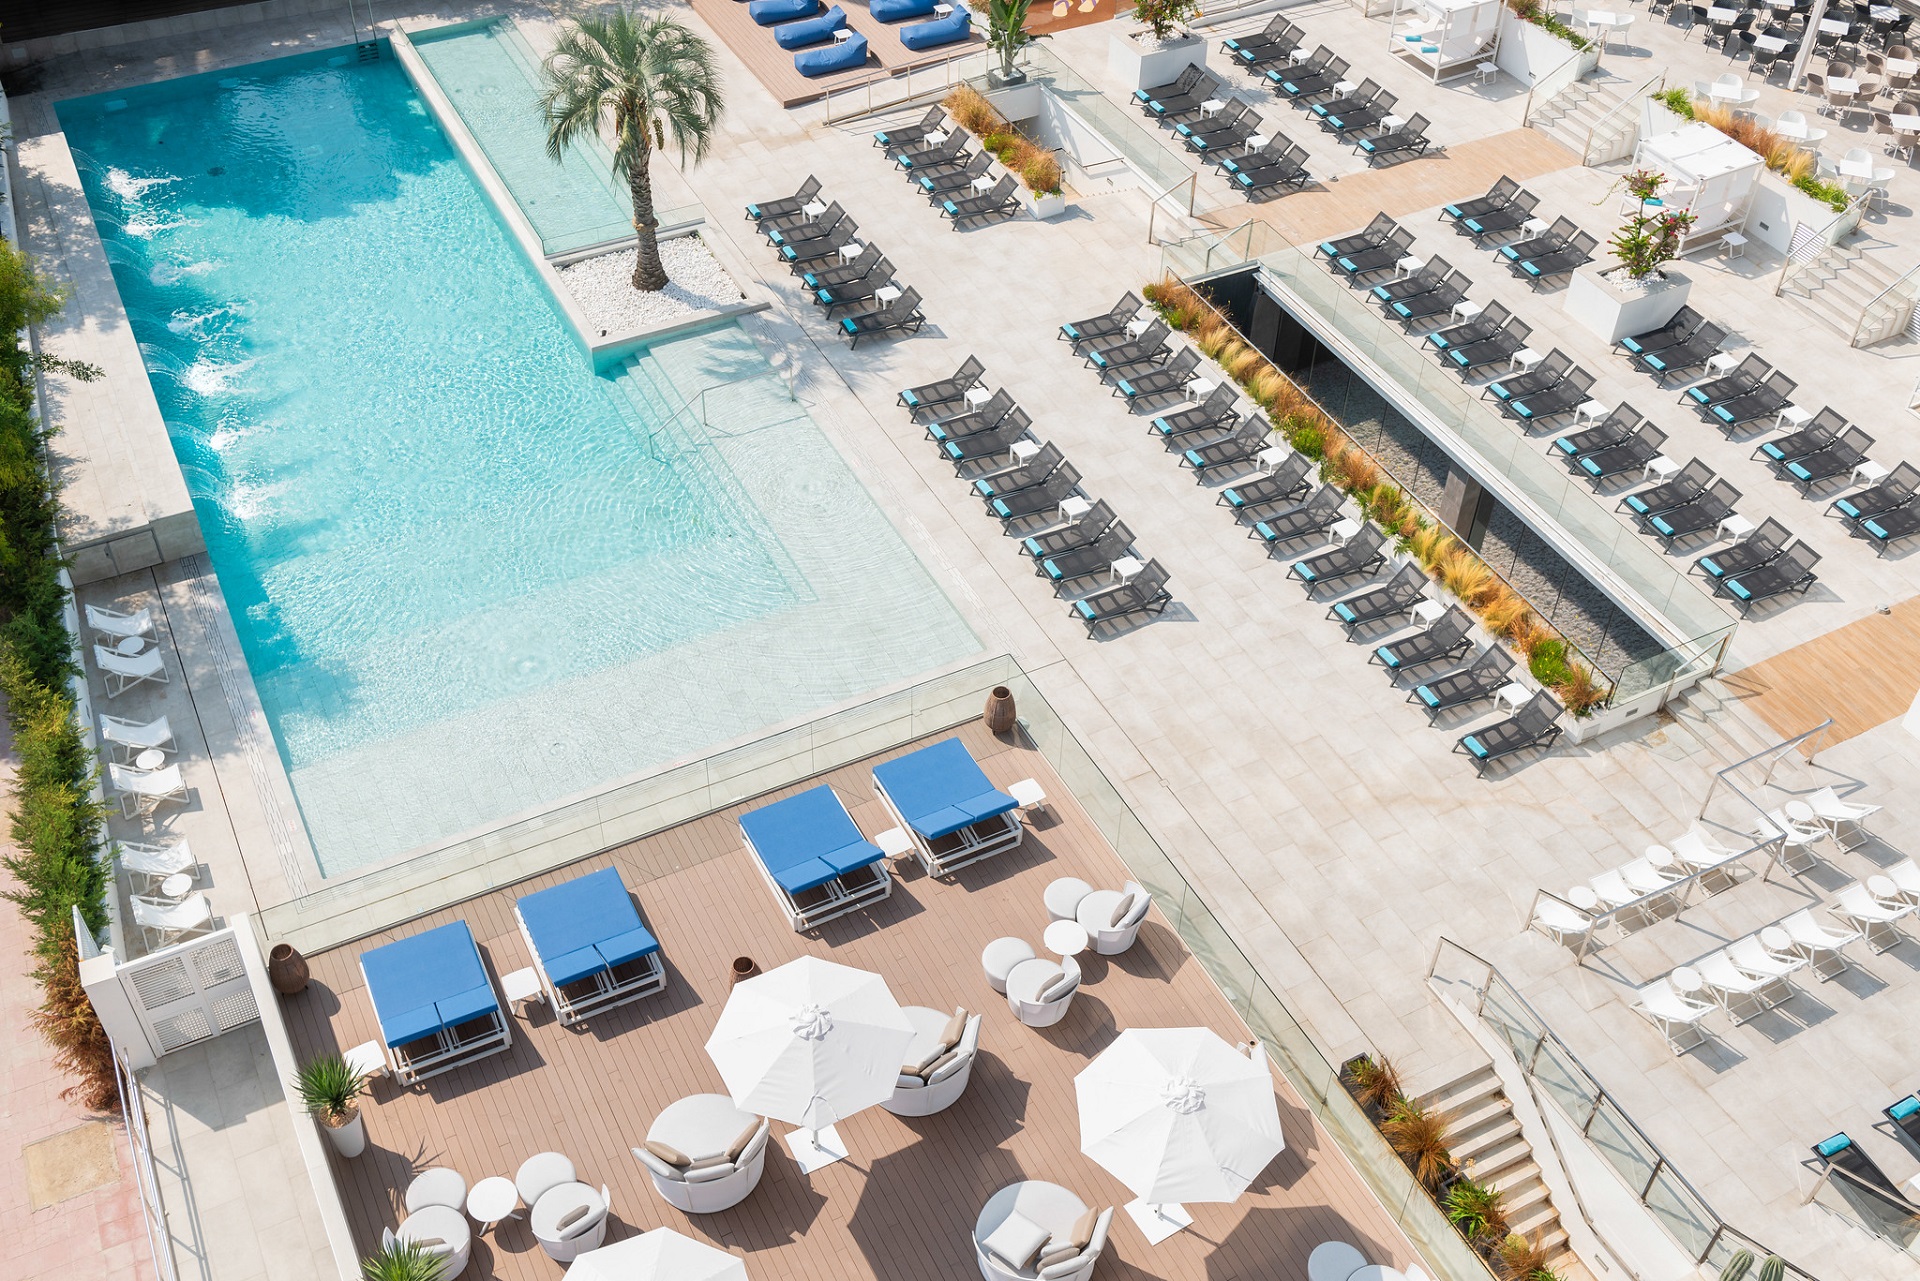 L’Azure Hotel - Lloret de Mar | Golf på Costa Brava